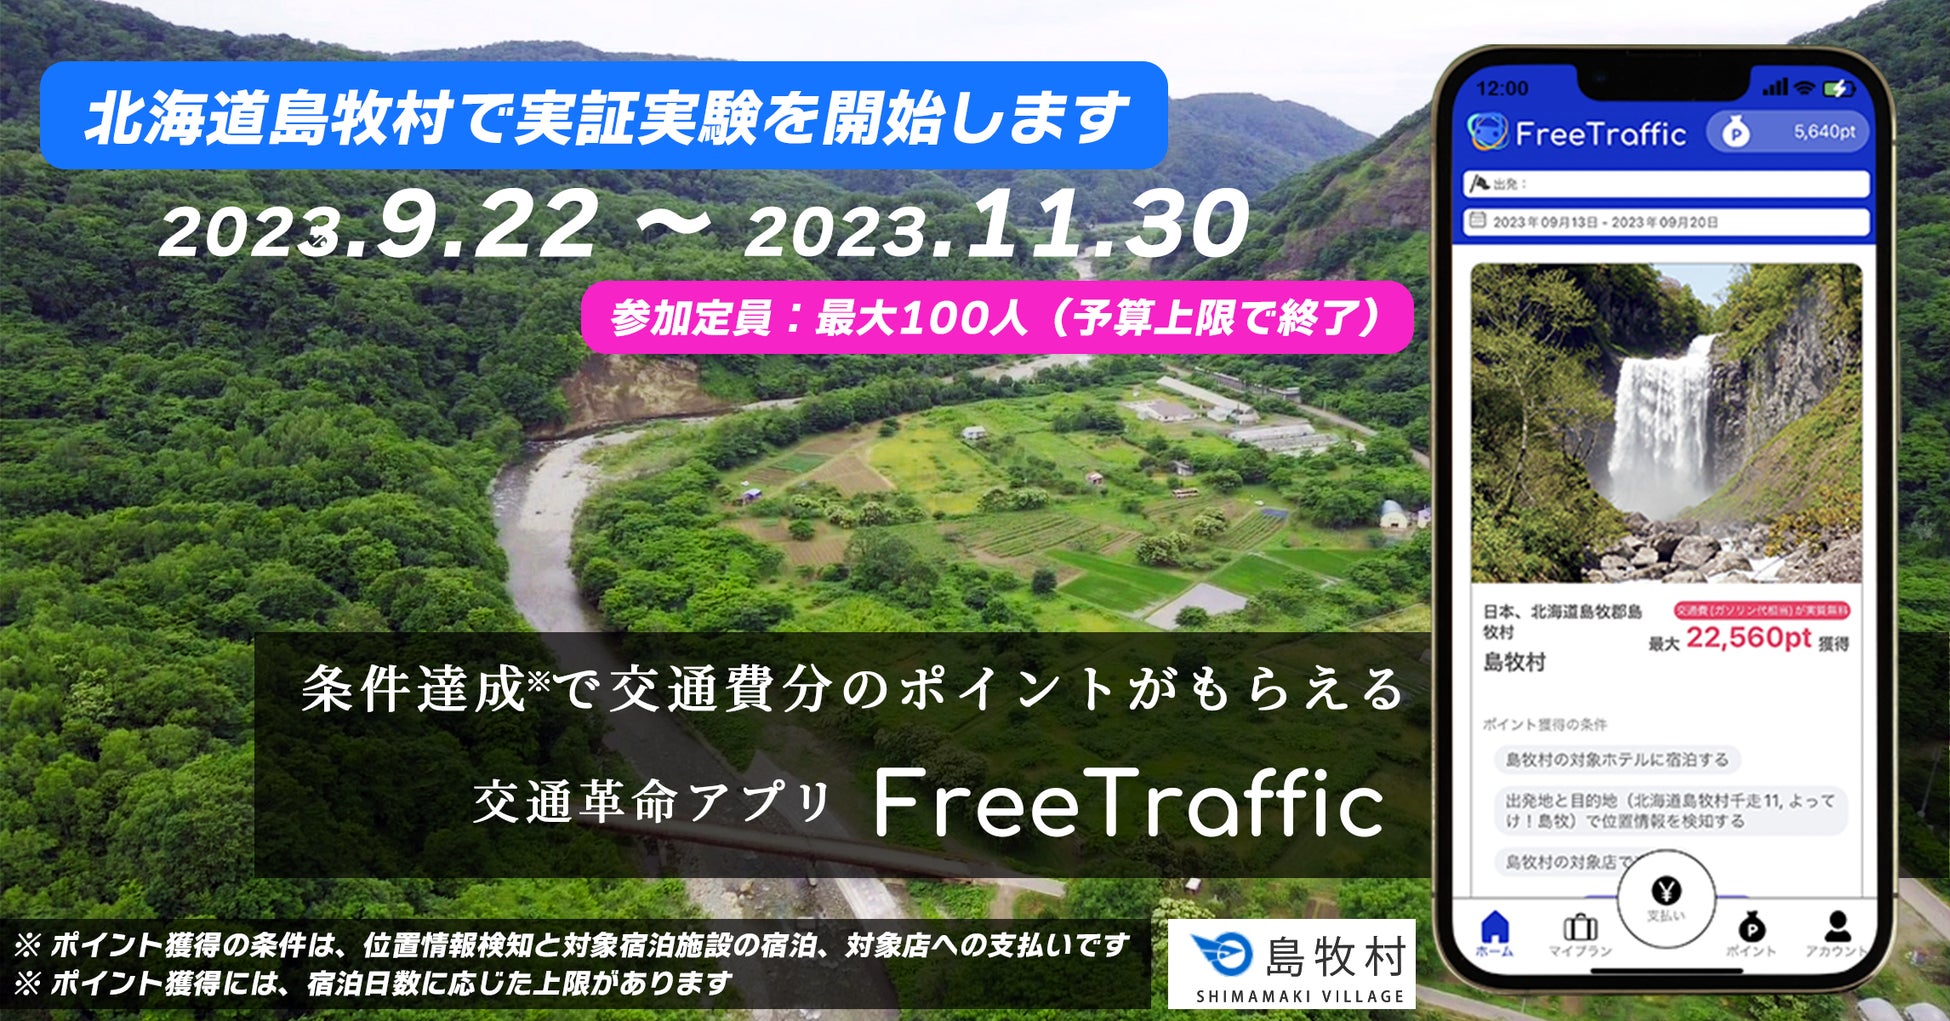 旅行者の交通費を自治体等が負担する世界初の実証実験を北海道島牧村で開始 - PR TIMES